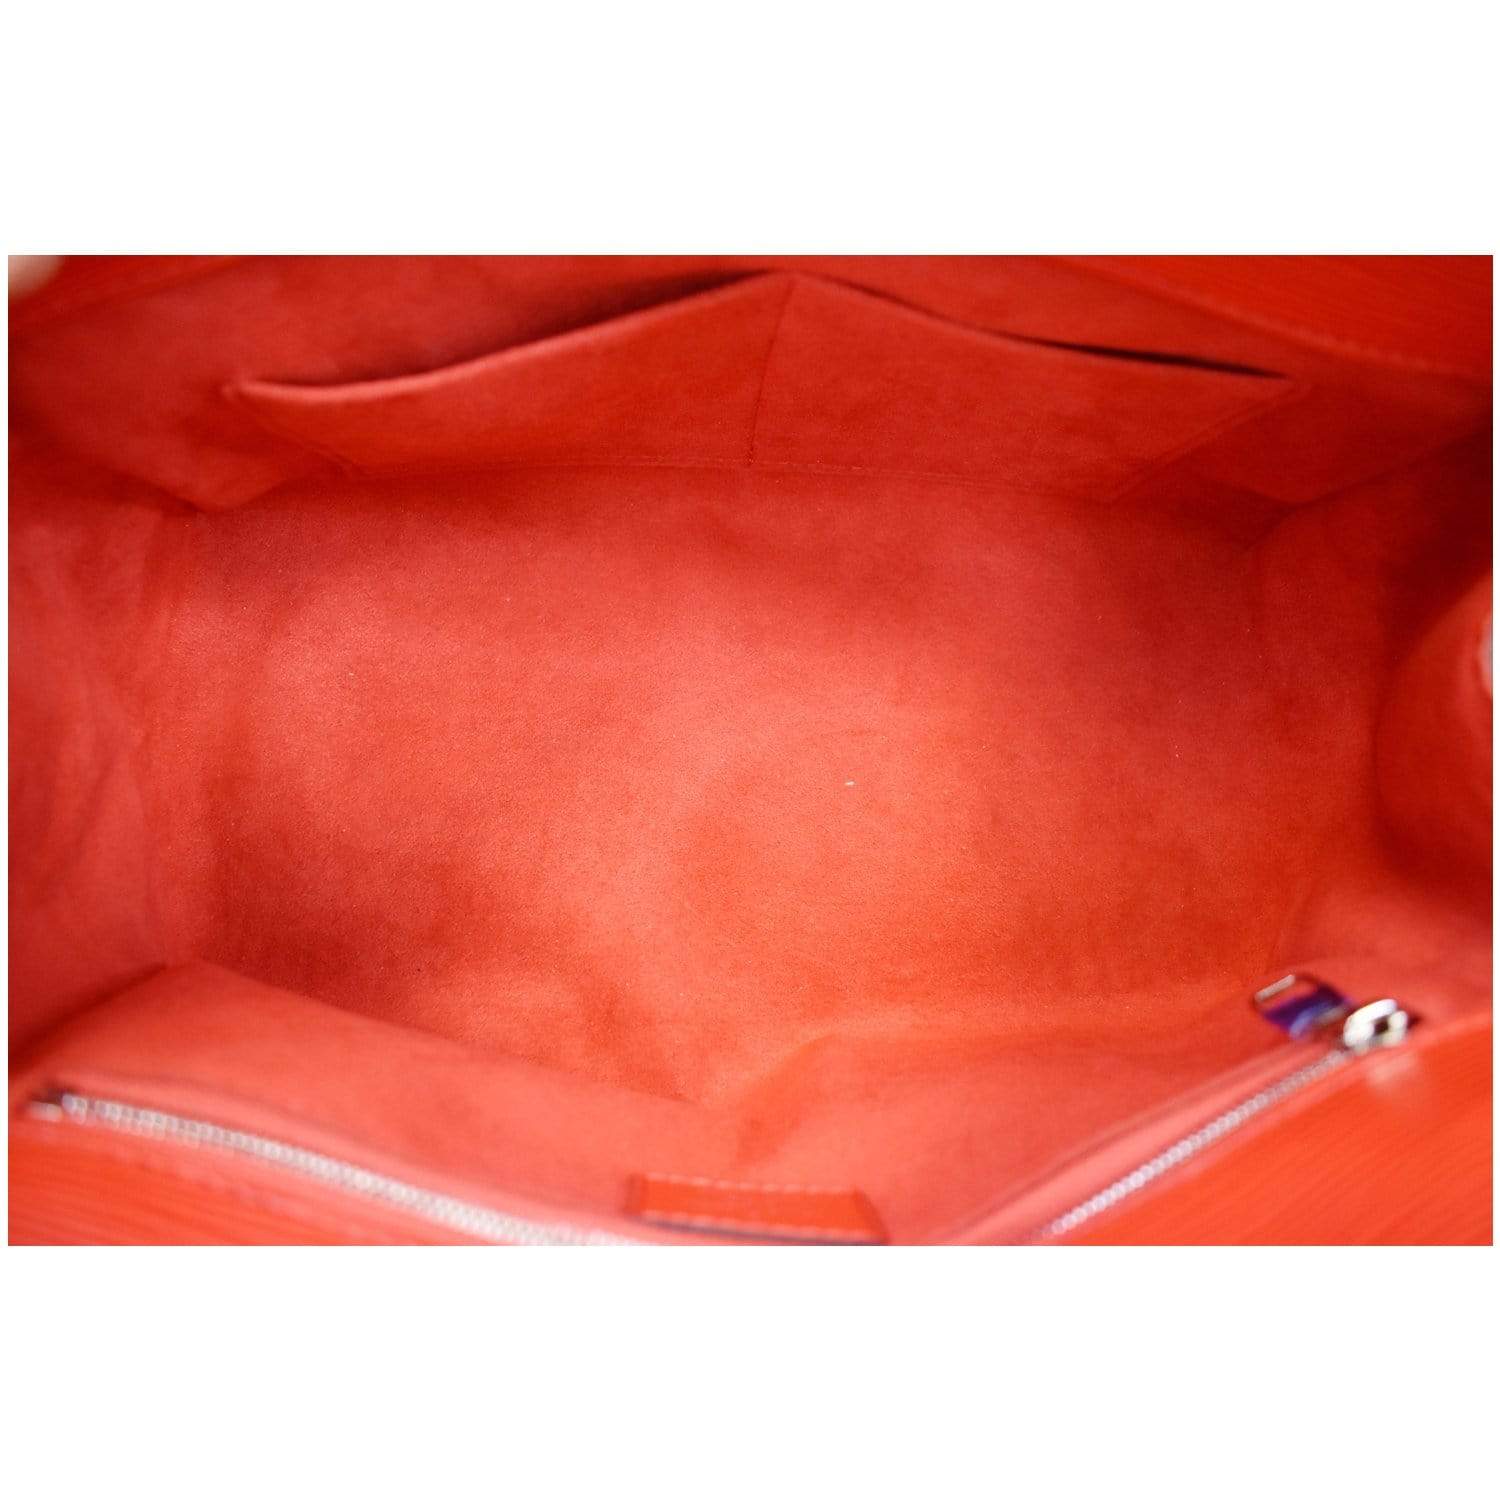 Marly cloth handbag Louis Vuitton Blue in Cloth - 27477641